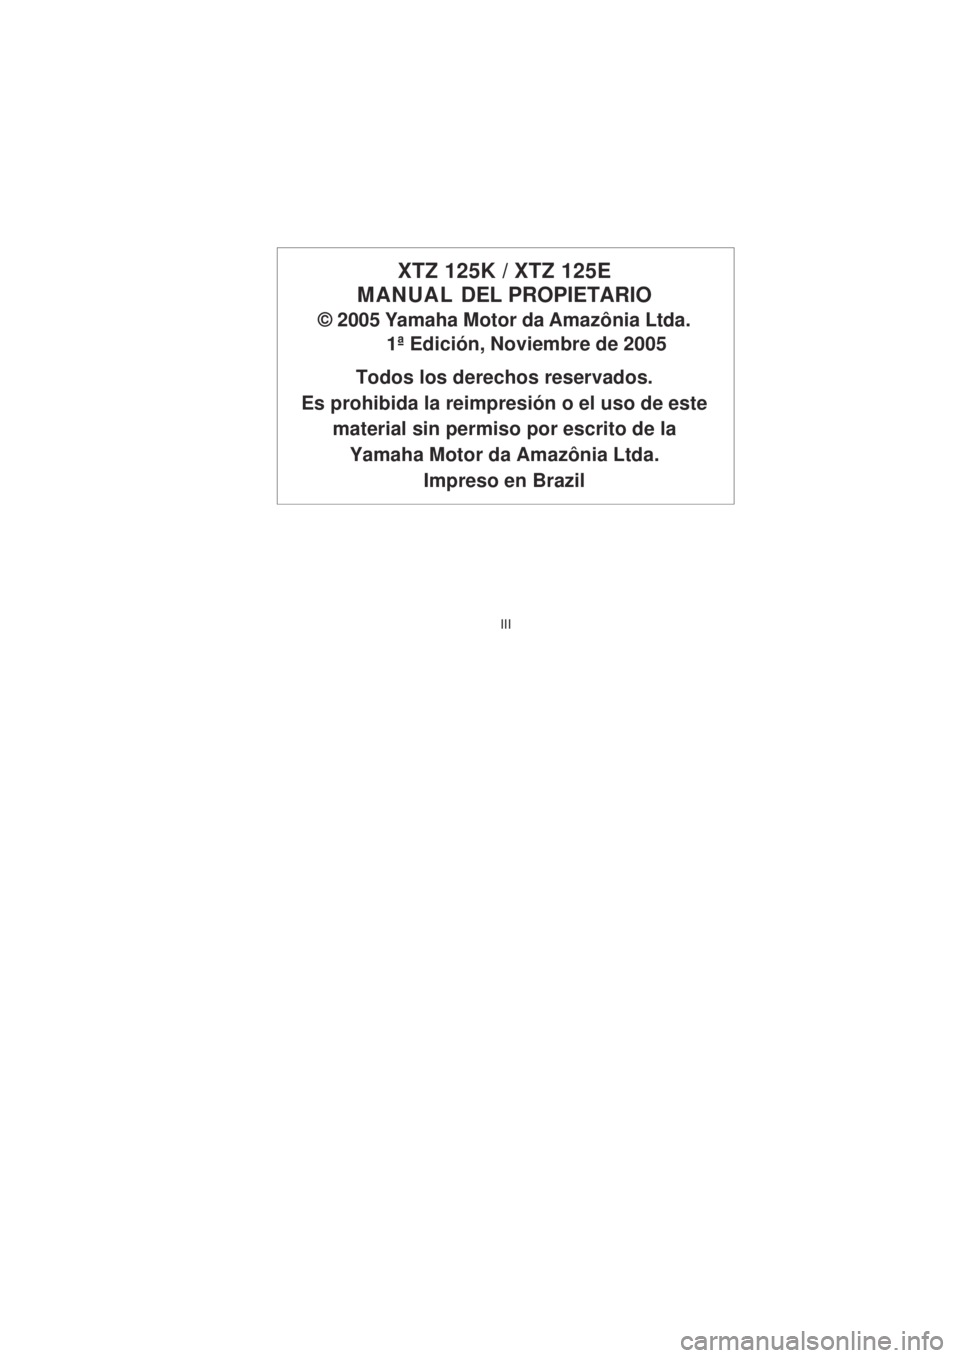 YAMAHA XTZ125 2007  Manuale de Empleo (in Spanish) III
III
XTZ 125K / XTZ 125E
MANUAL  DEL PROPIETARIO
© 2005 Yamaha Motor da Amazônia Ltda.
1ª Edición, Noviembre de 2005
Todos los derechos reservados.
Es prohibida la reimpresión o el uso de este